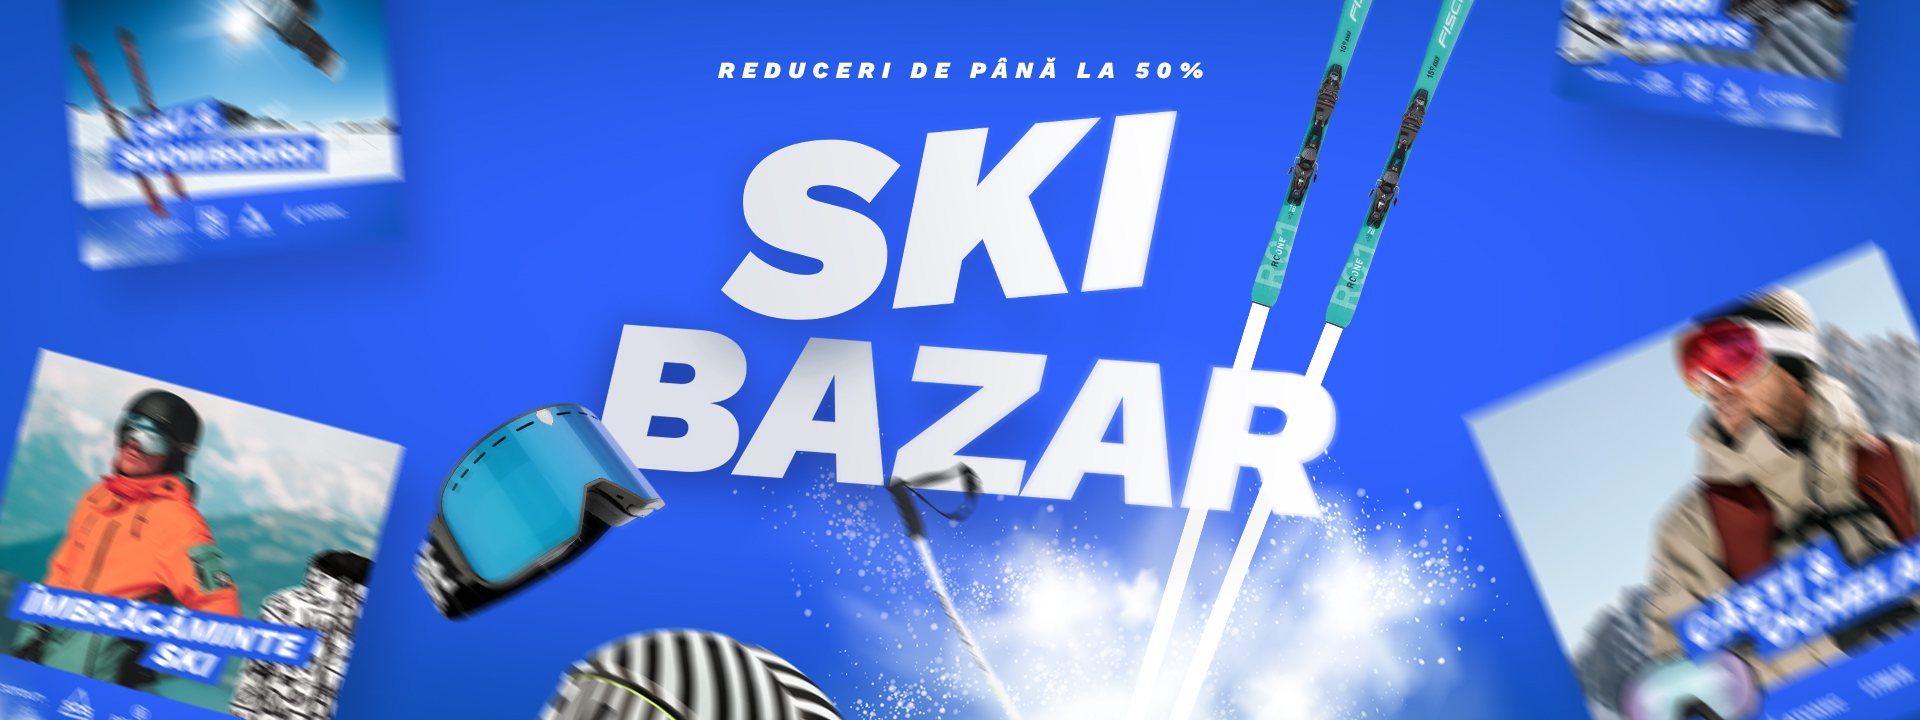 ski bazar